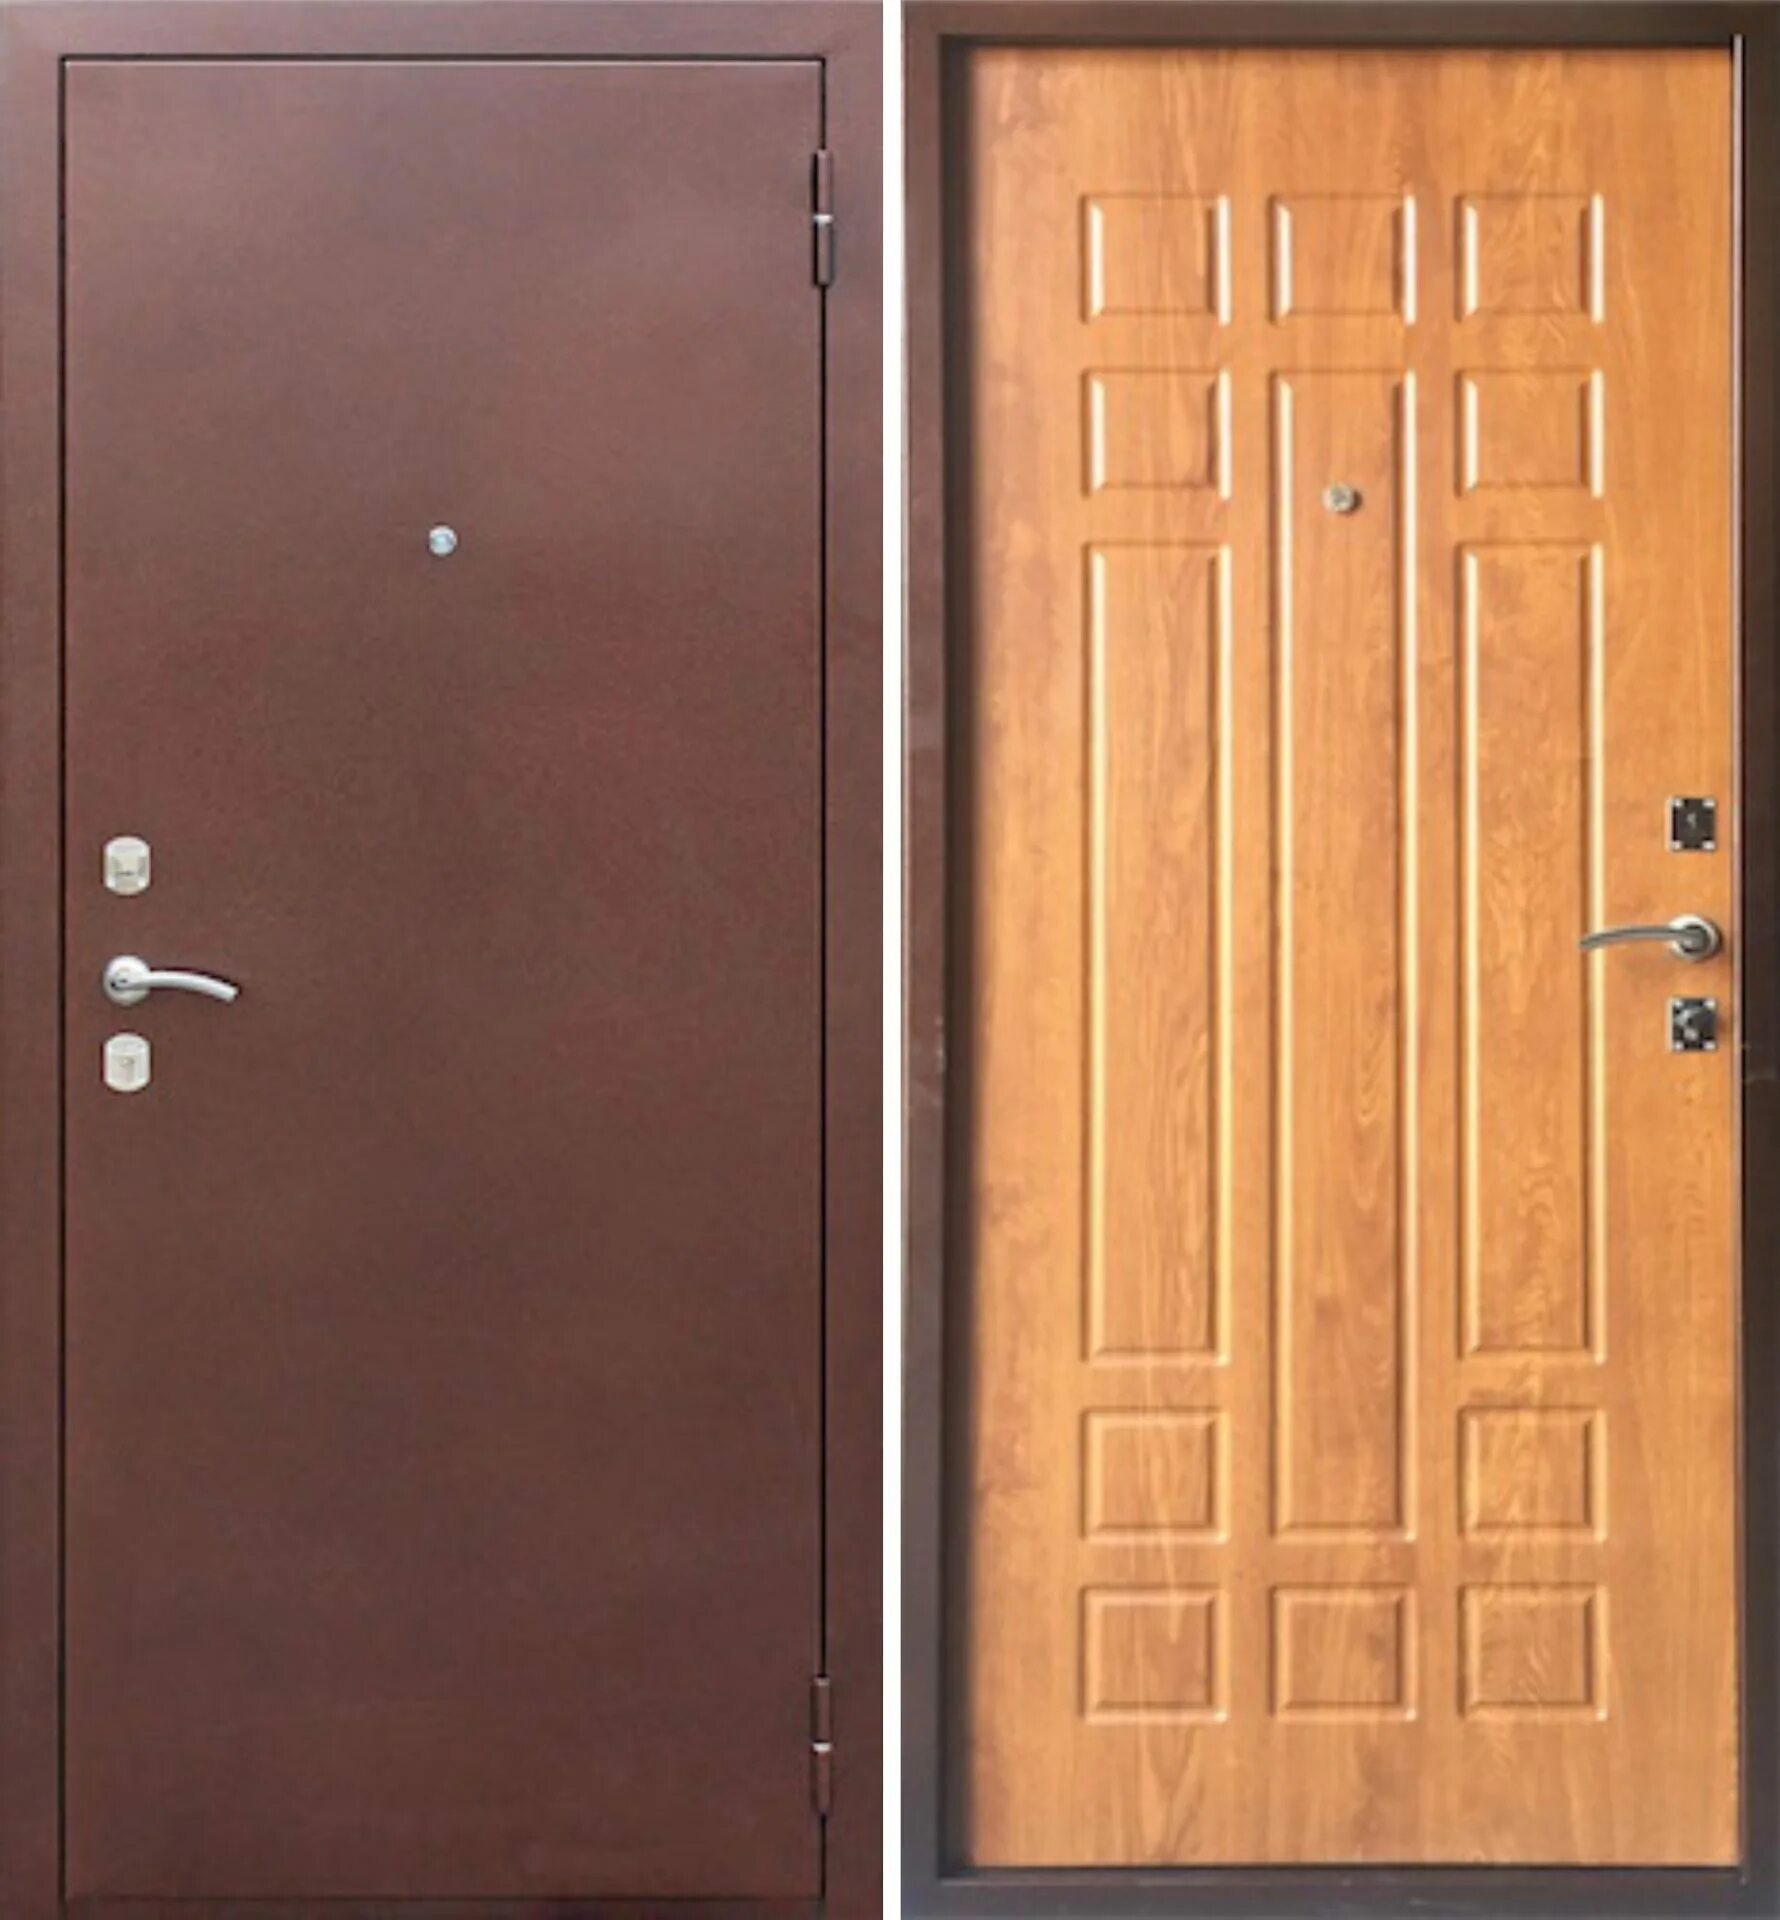 Купить дверь бу в воронеже. Дверь Гарда 8 мм рустикальный дуб. Входная дверь Спарта. Дверь входная металлическая рустикальный дуб 960r. Входная дверь Гарда 8 мм (белый ясень,рустикальный дуб, венге).